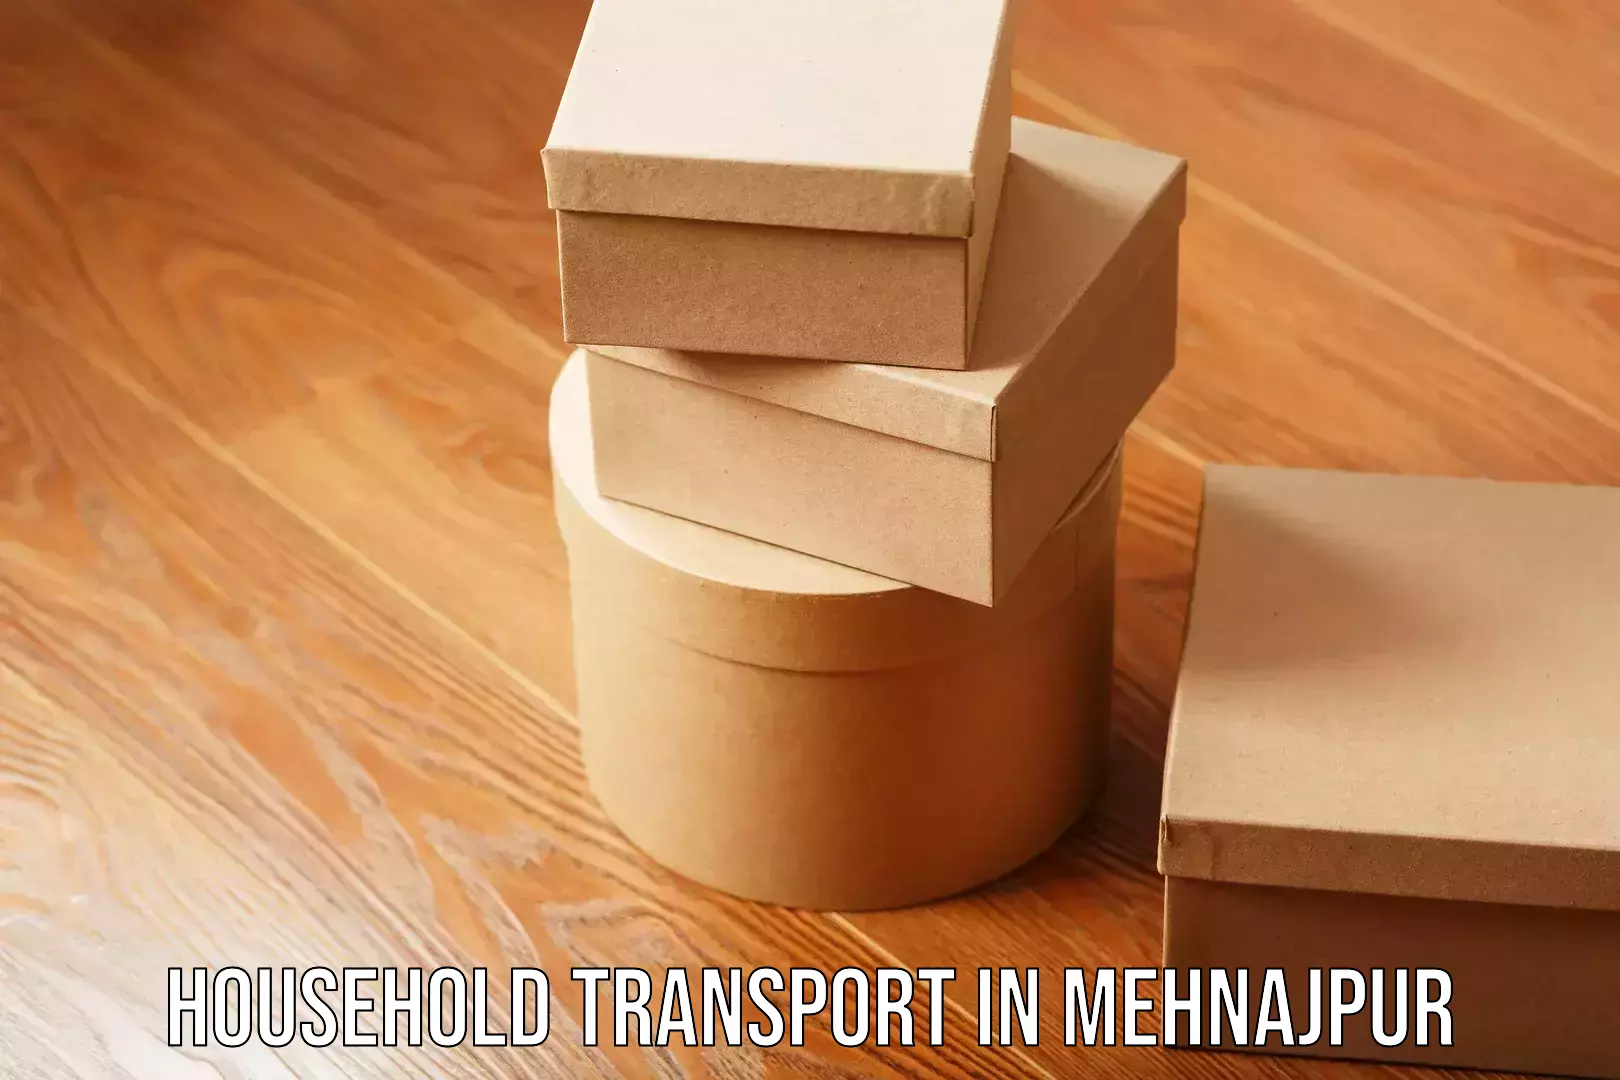 Comprehensive goods transport in Mehnajpur